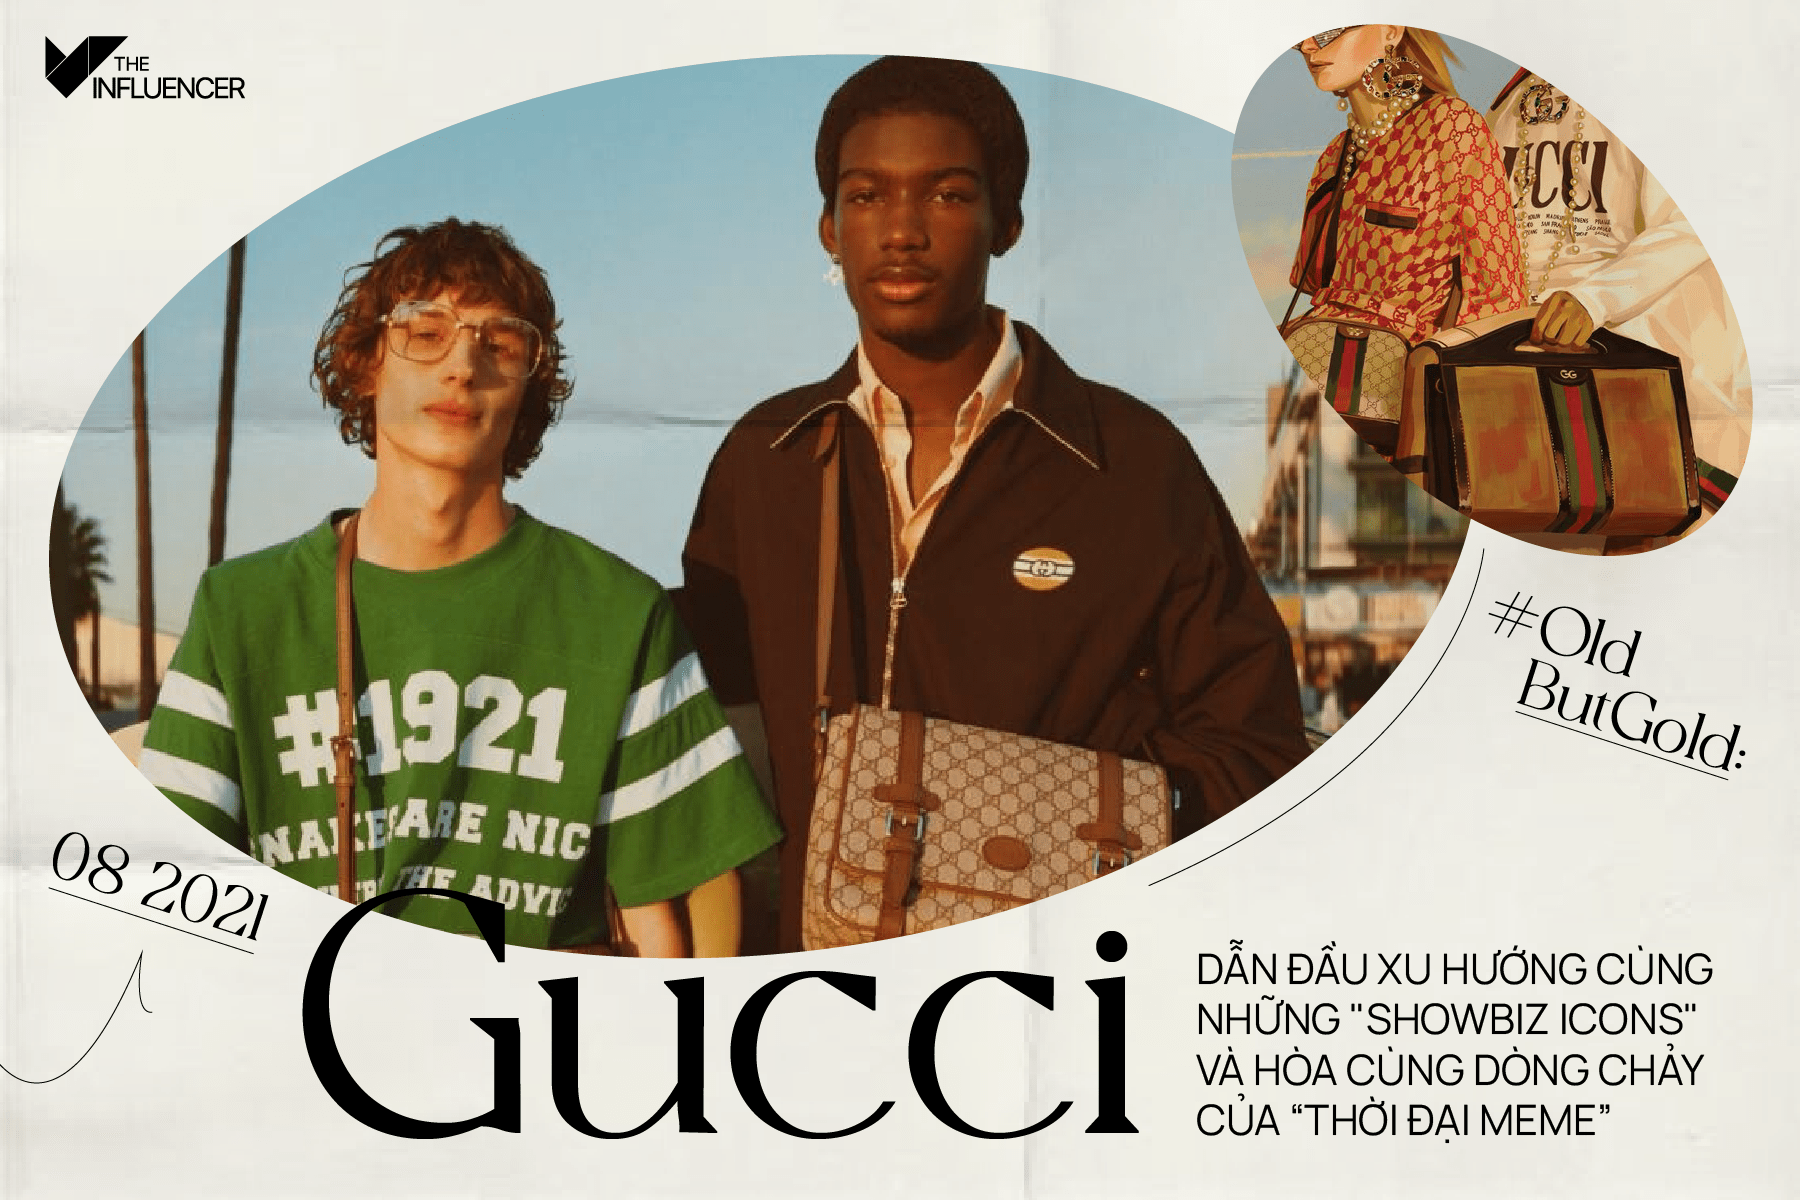 #OldButGold: Gucci - Dẫn đầu xu hướng cùng những "showbiz icons" và hòa cùng dòng chảy của “thời đại meme”